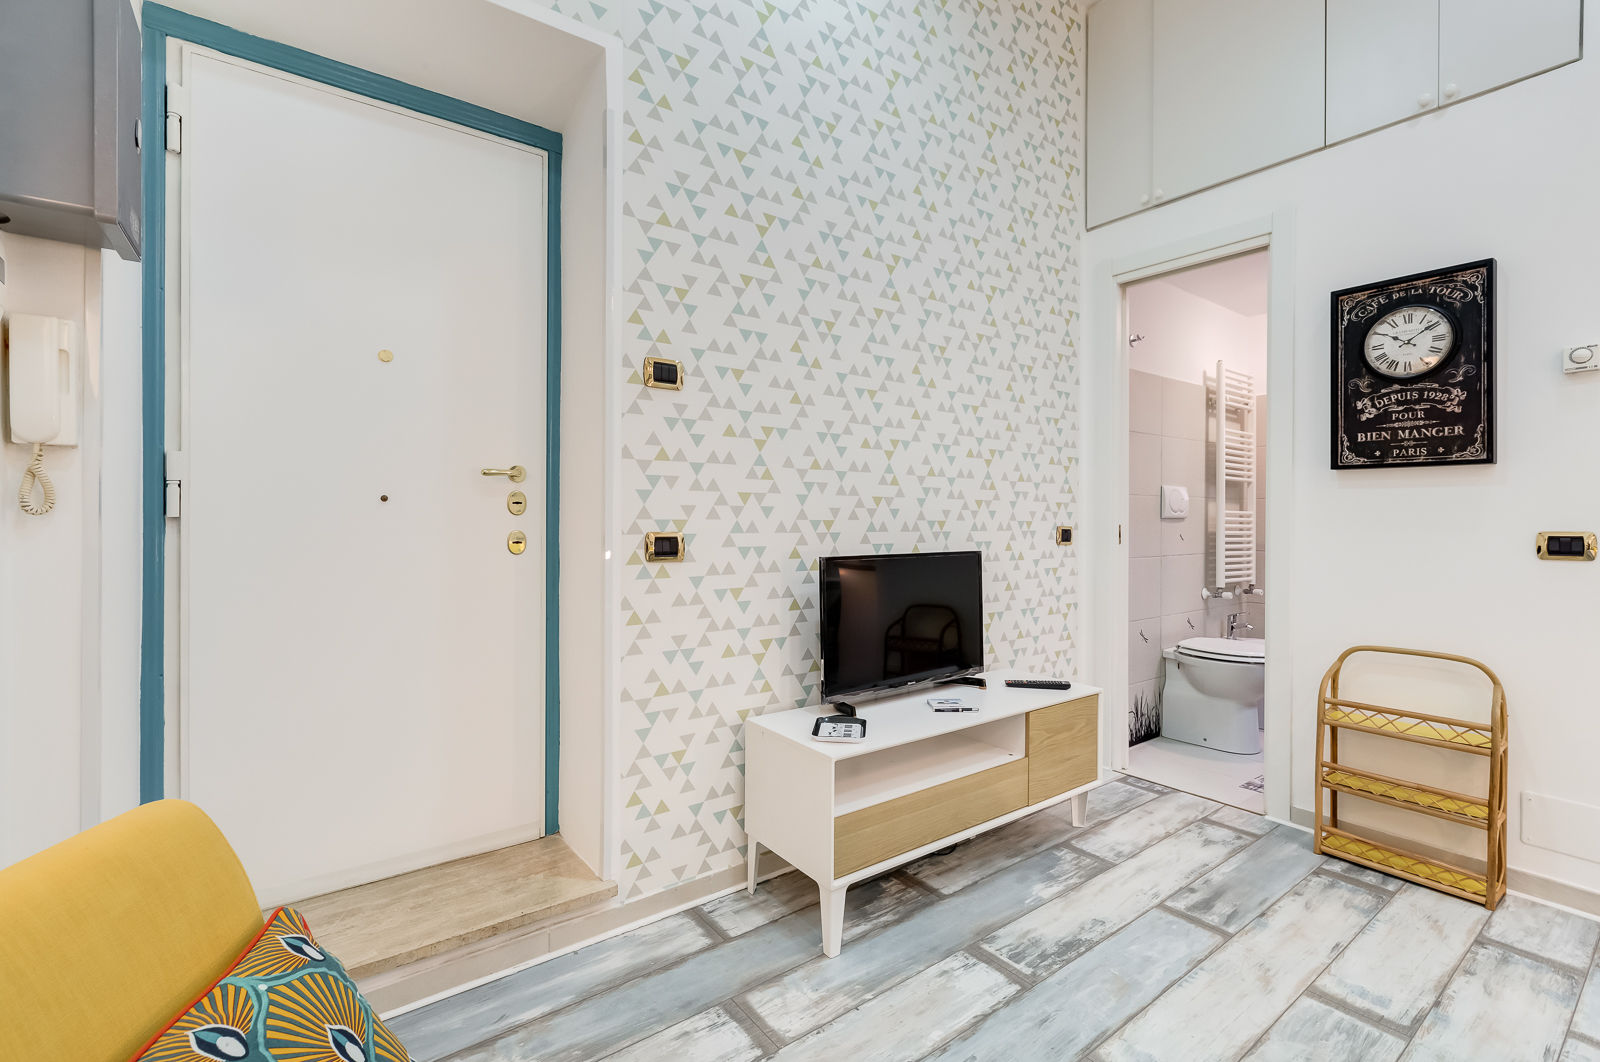 Mini Appartamento Turistico - Roma, Luca Tranquilli - Fotografo Luca Tranquilli - Fotografo Salas modernas